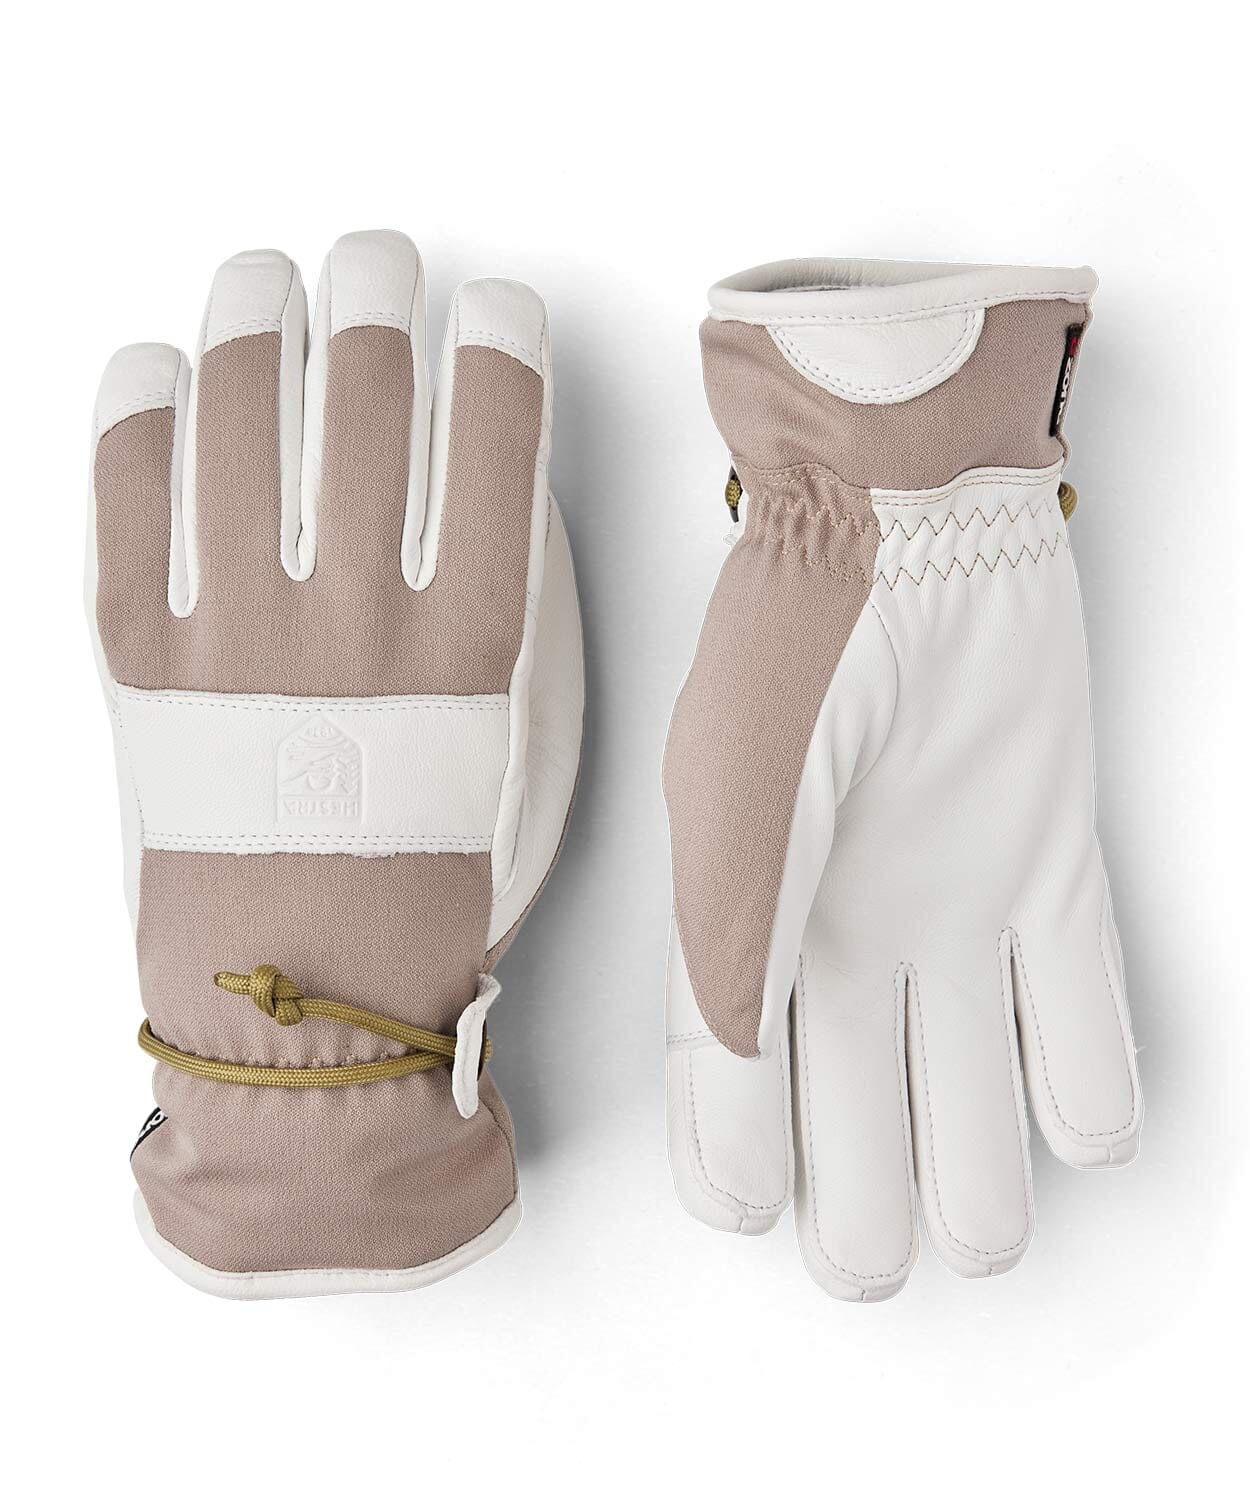 Voss CZone 5 finger Glove – Snowsport